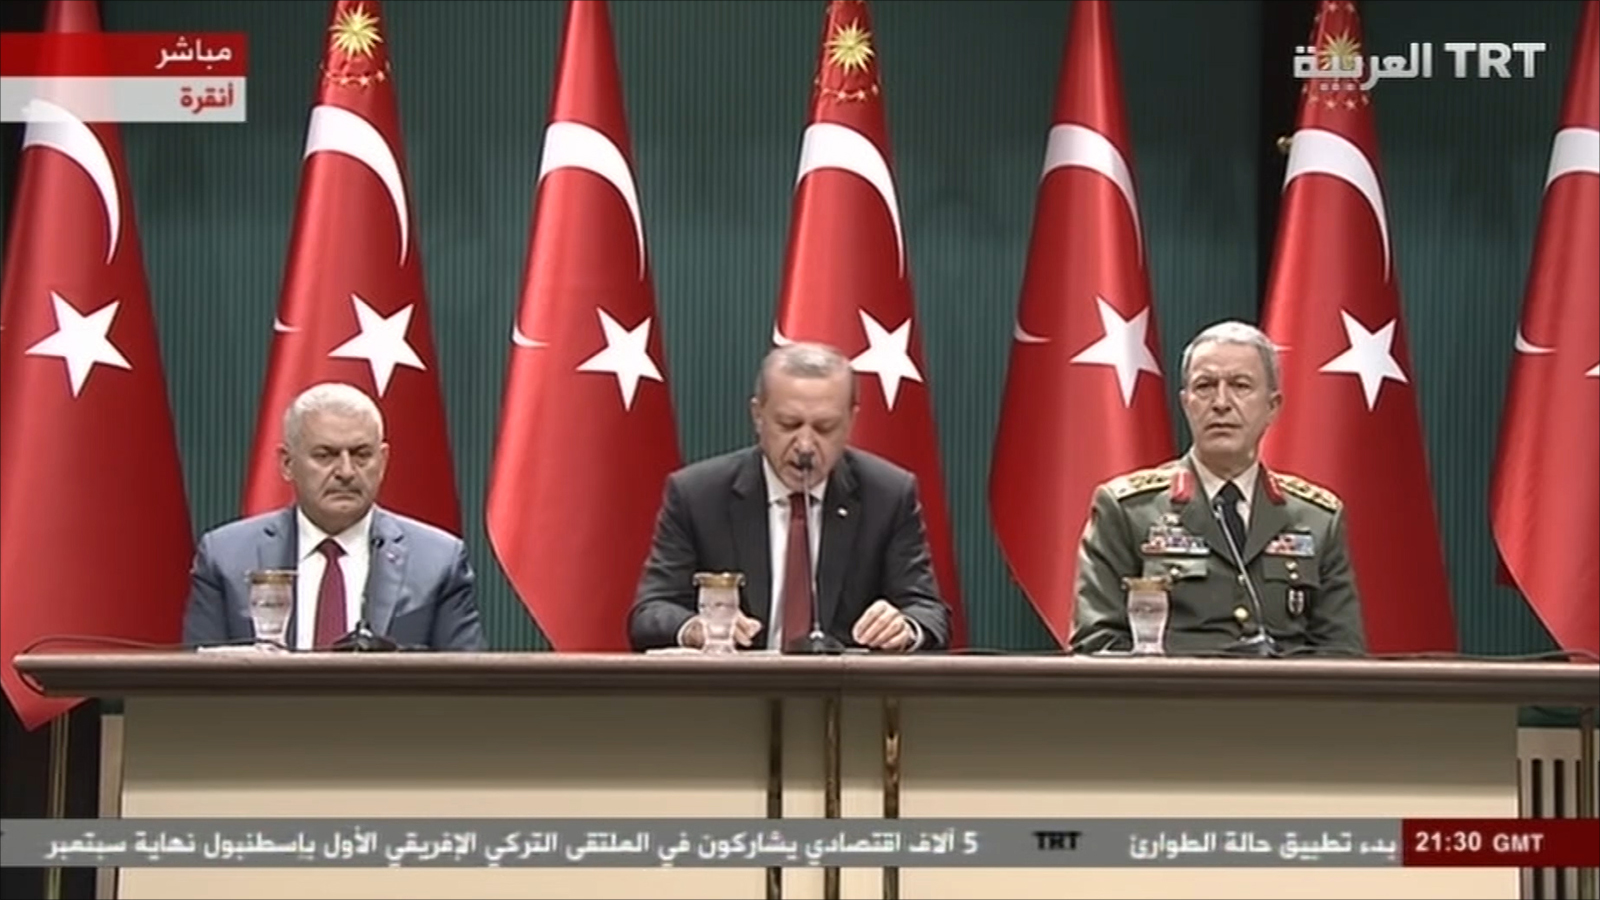 ‪أردوغان أكد أن الحكومة بصدد وضع هيكل جديد للقوات المسلحة وضخ دماء جديدة فيها‬ أردوغان أكد أن الحكومة بصدد وضع هيكل جديد للقوات المسلحة وضخ دماء جديدة فيها (الجزيرة-وكالات)